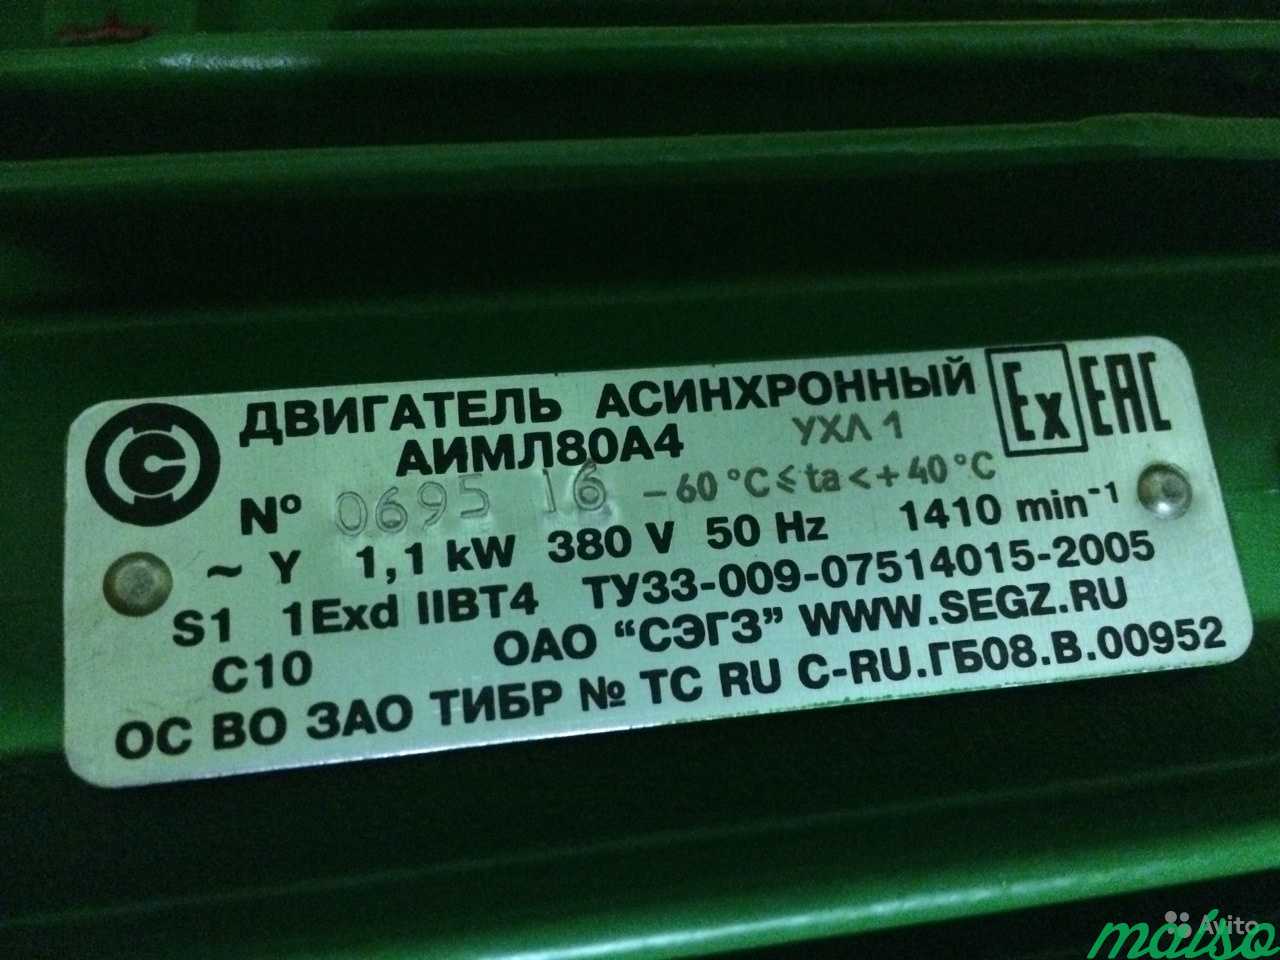 Электродвигатель аимл80А4 в Москве. Фото 2